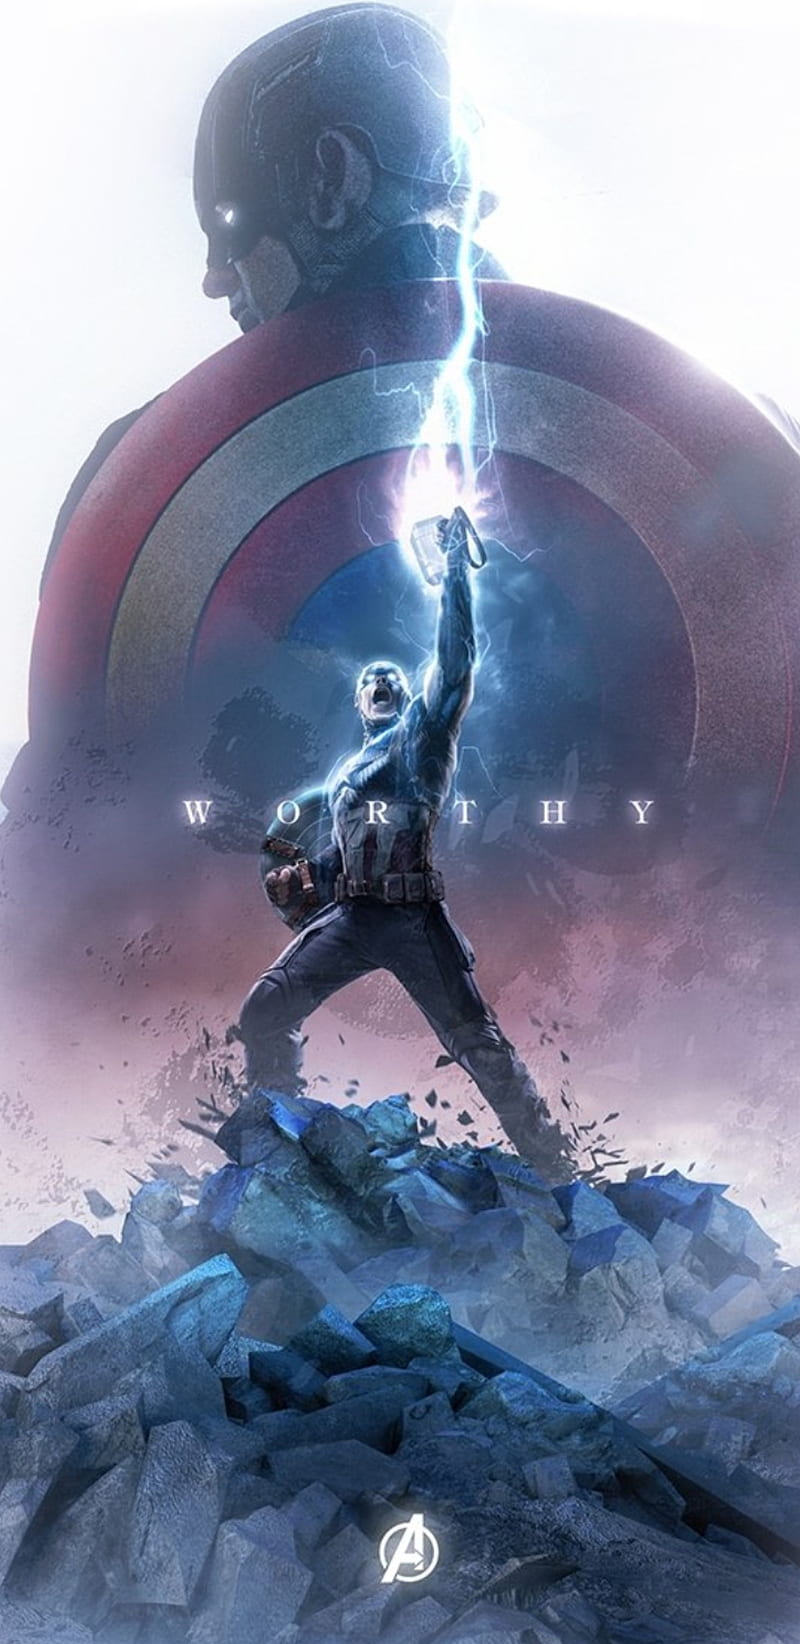 Avengers Endgame, bosslogic, captain america, thor hammer, worthy, HD phone  wallpaper | Peakpx